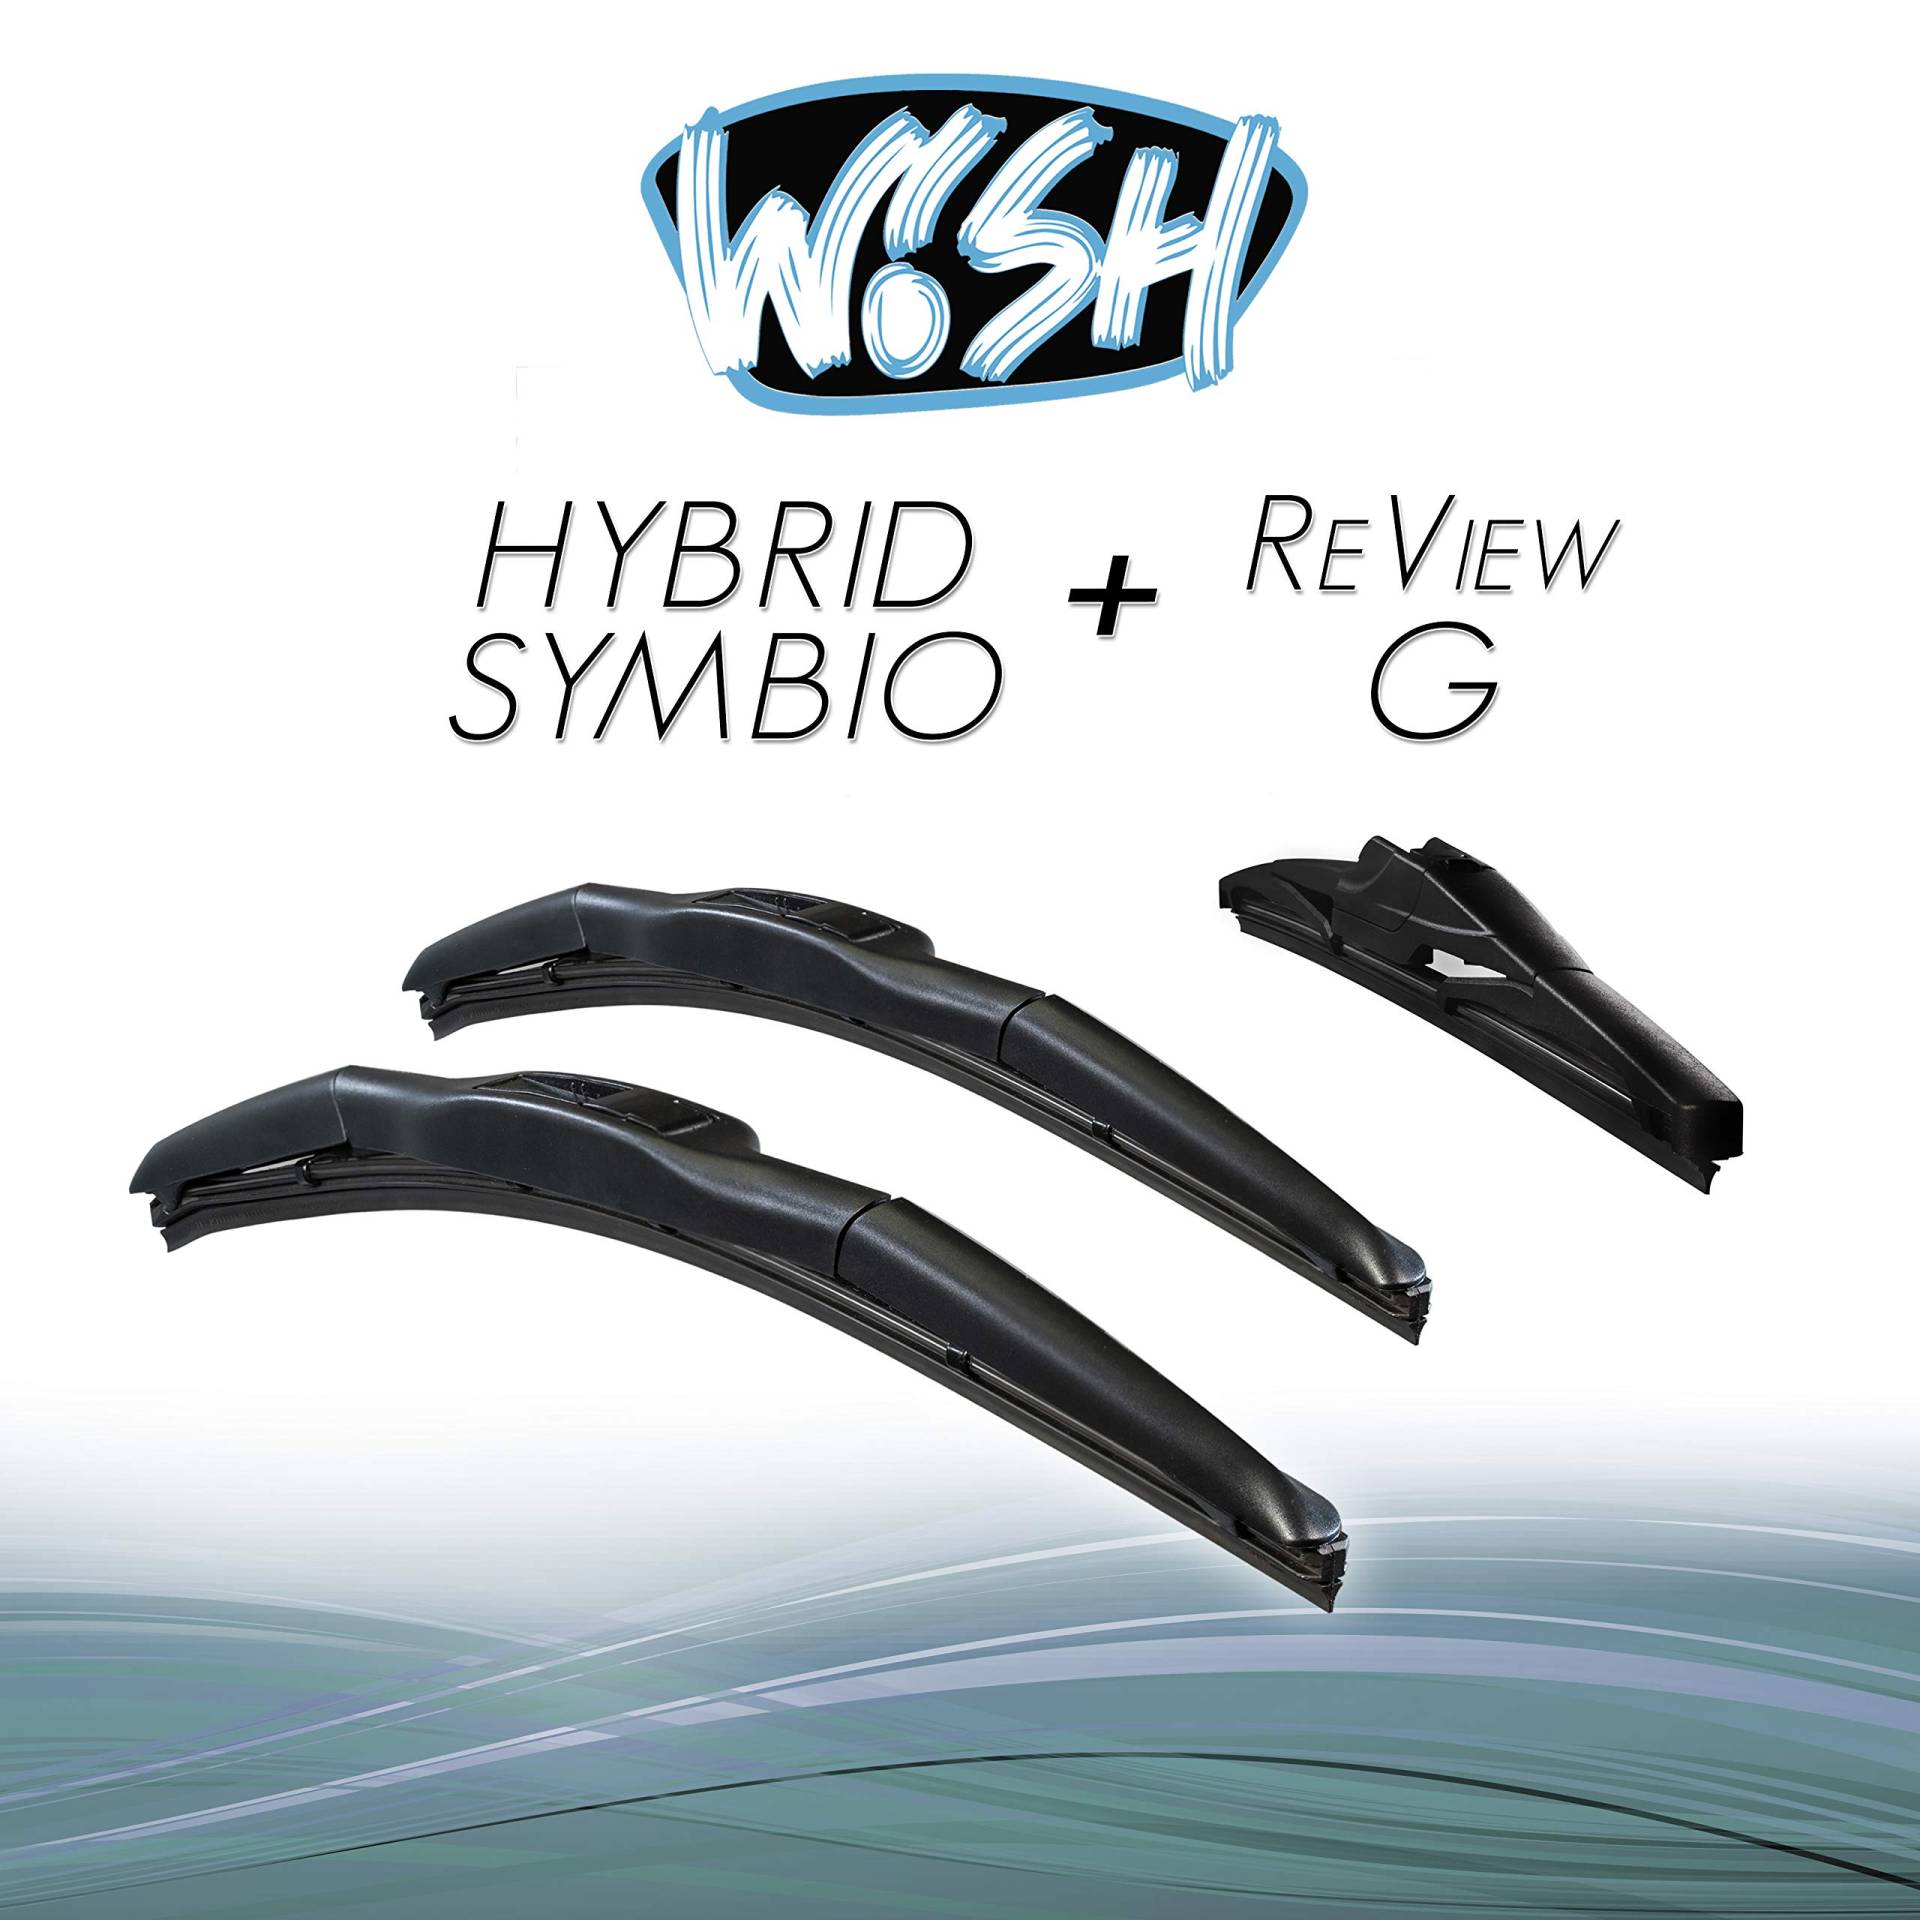 Wish® Hybrid Symbio Satz Front + Heck Scheibenwischer Länge: 24" 600mm / 19" 480mm / 12" 300mm Wischblätter Vorne und Hinten Hybrid-Scheibenwischer + Review G HS24.19.12RG von Wish